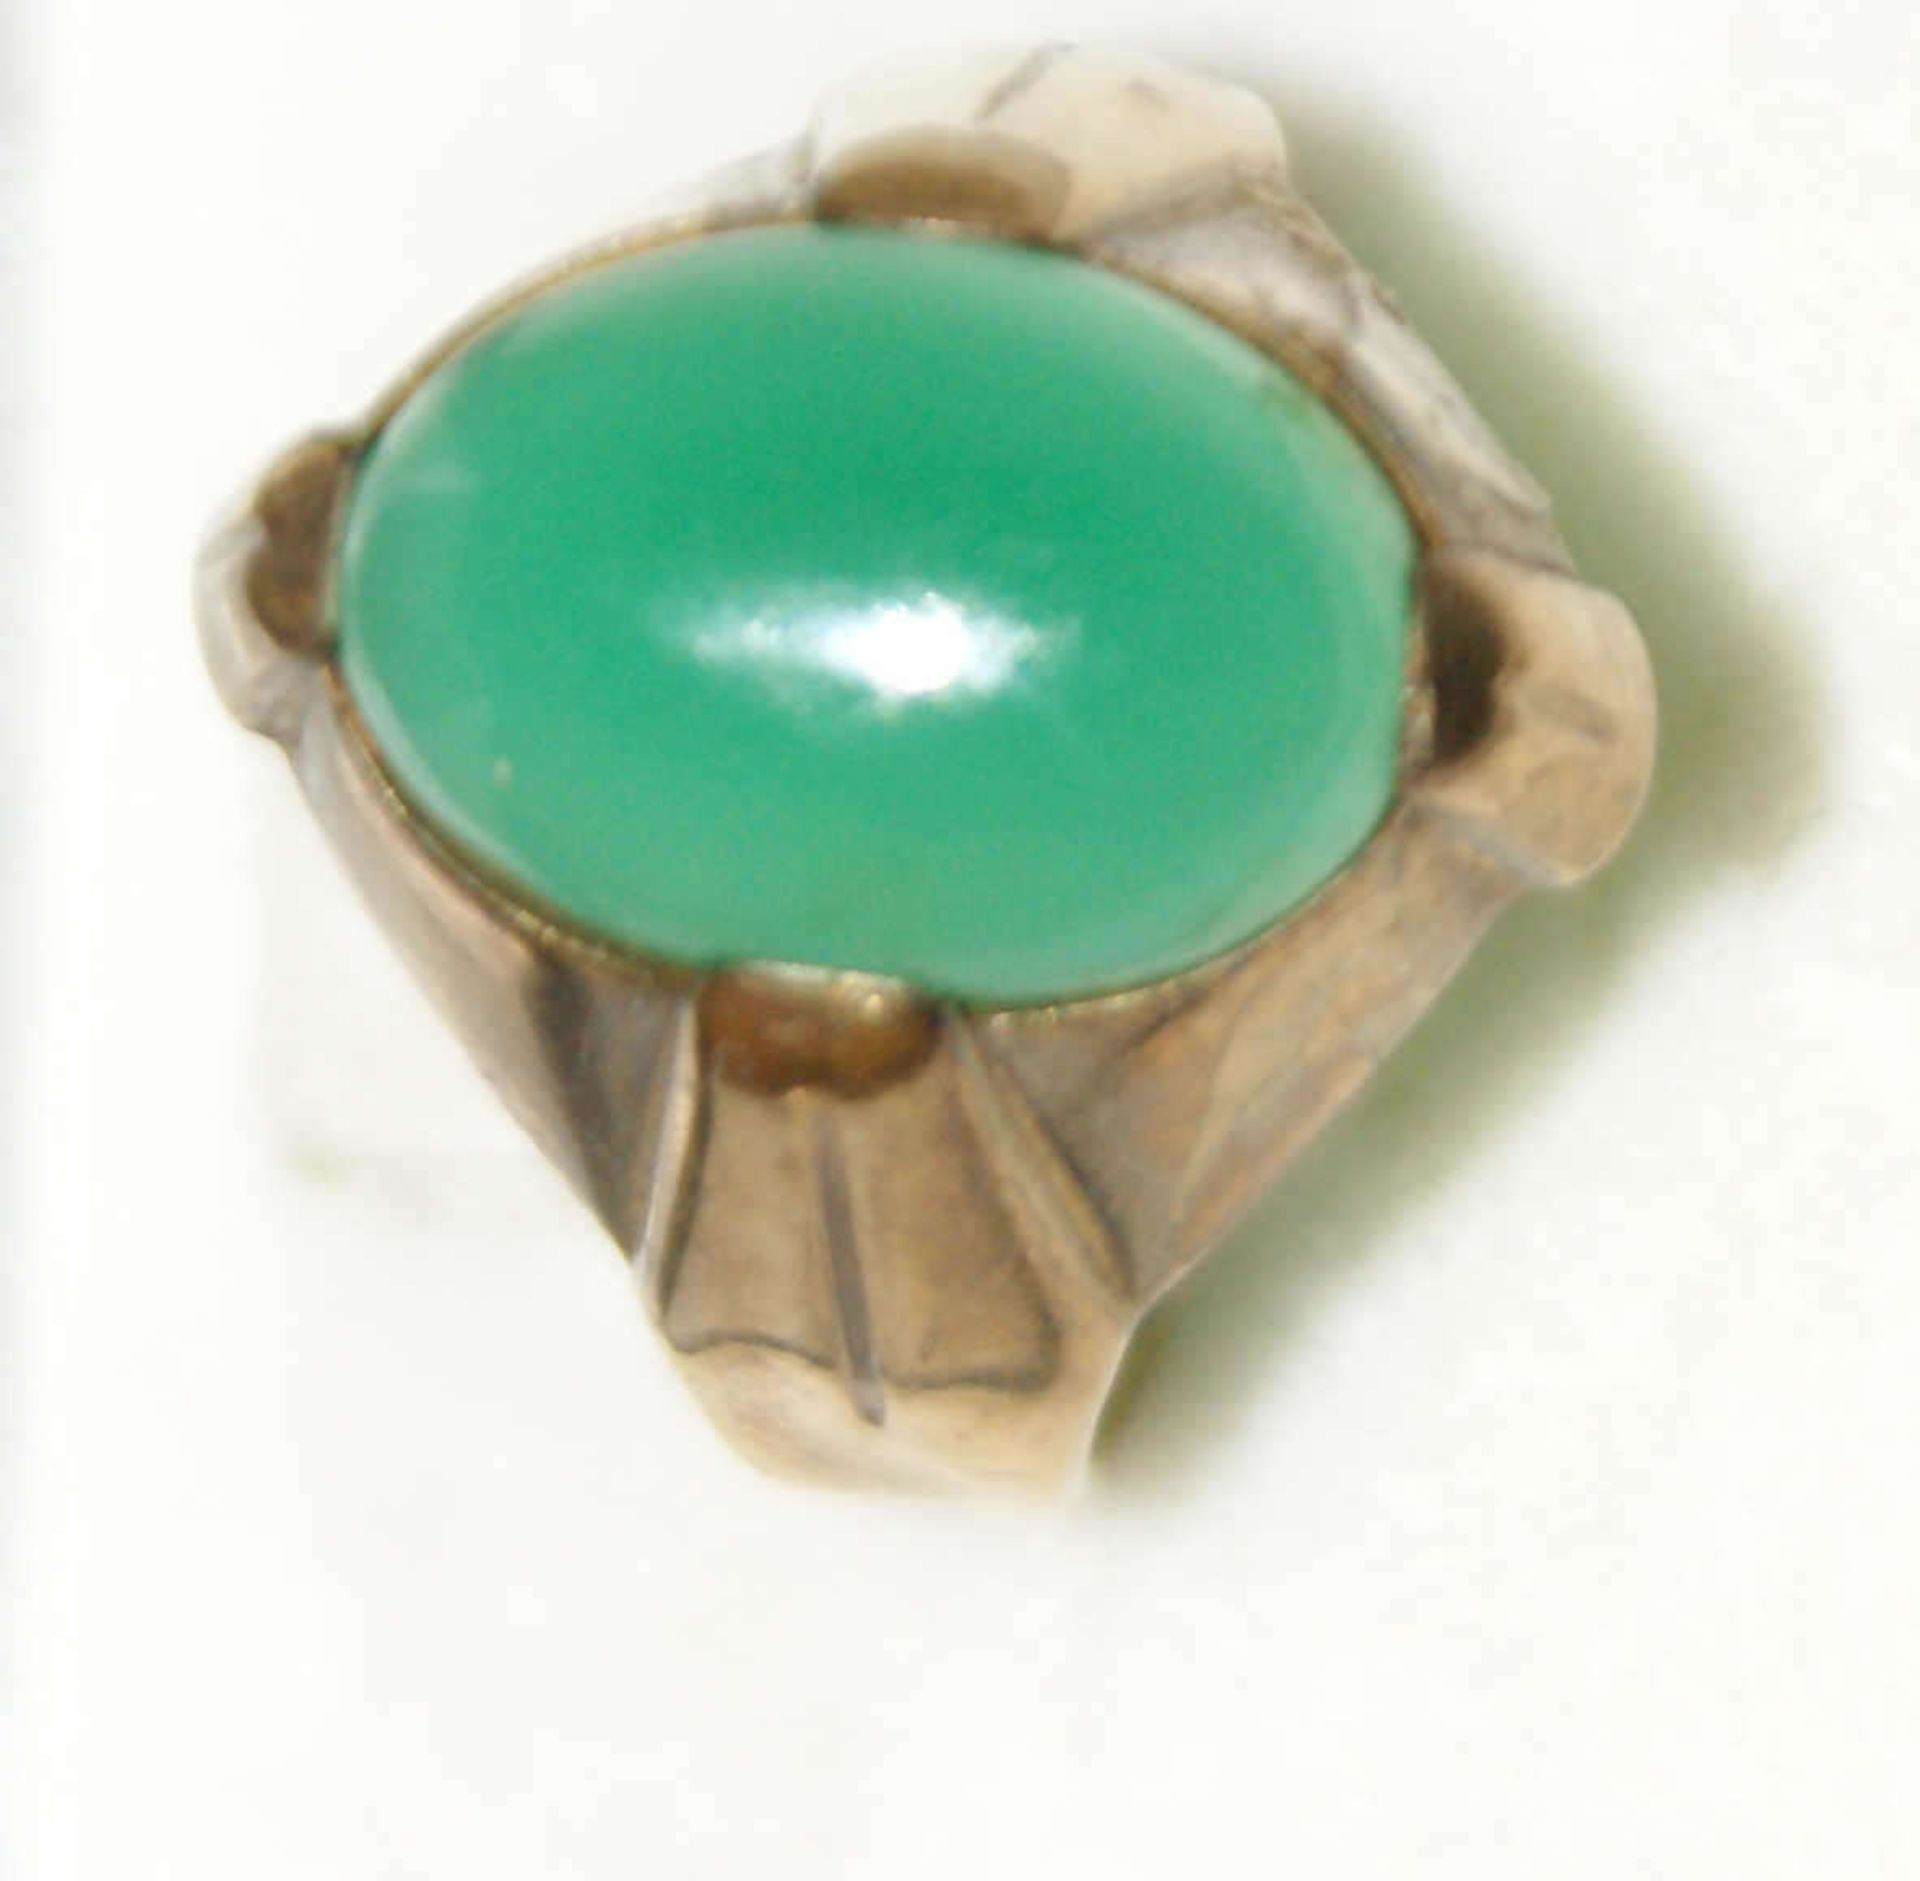 Damenring, 333er Gelbgold, besetzt mit grünem Halbedelstein. Ringgröße 50, Gewicht ca. 4 g